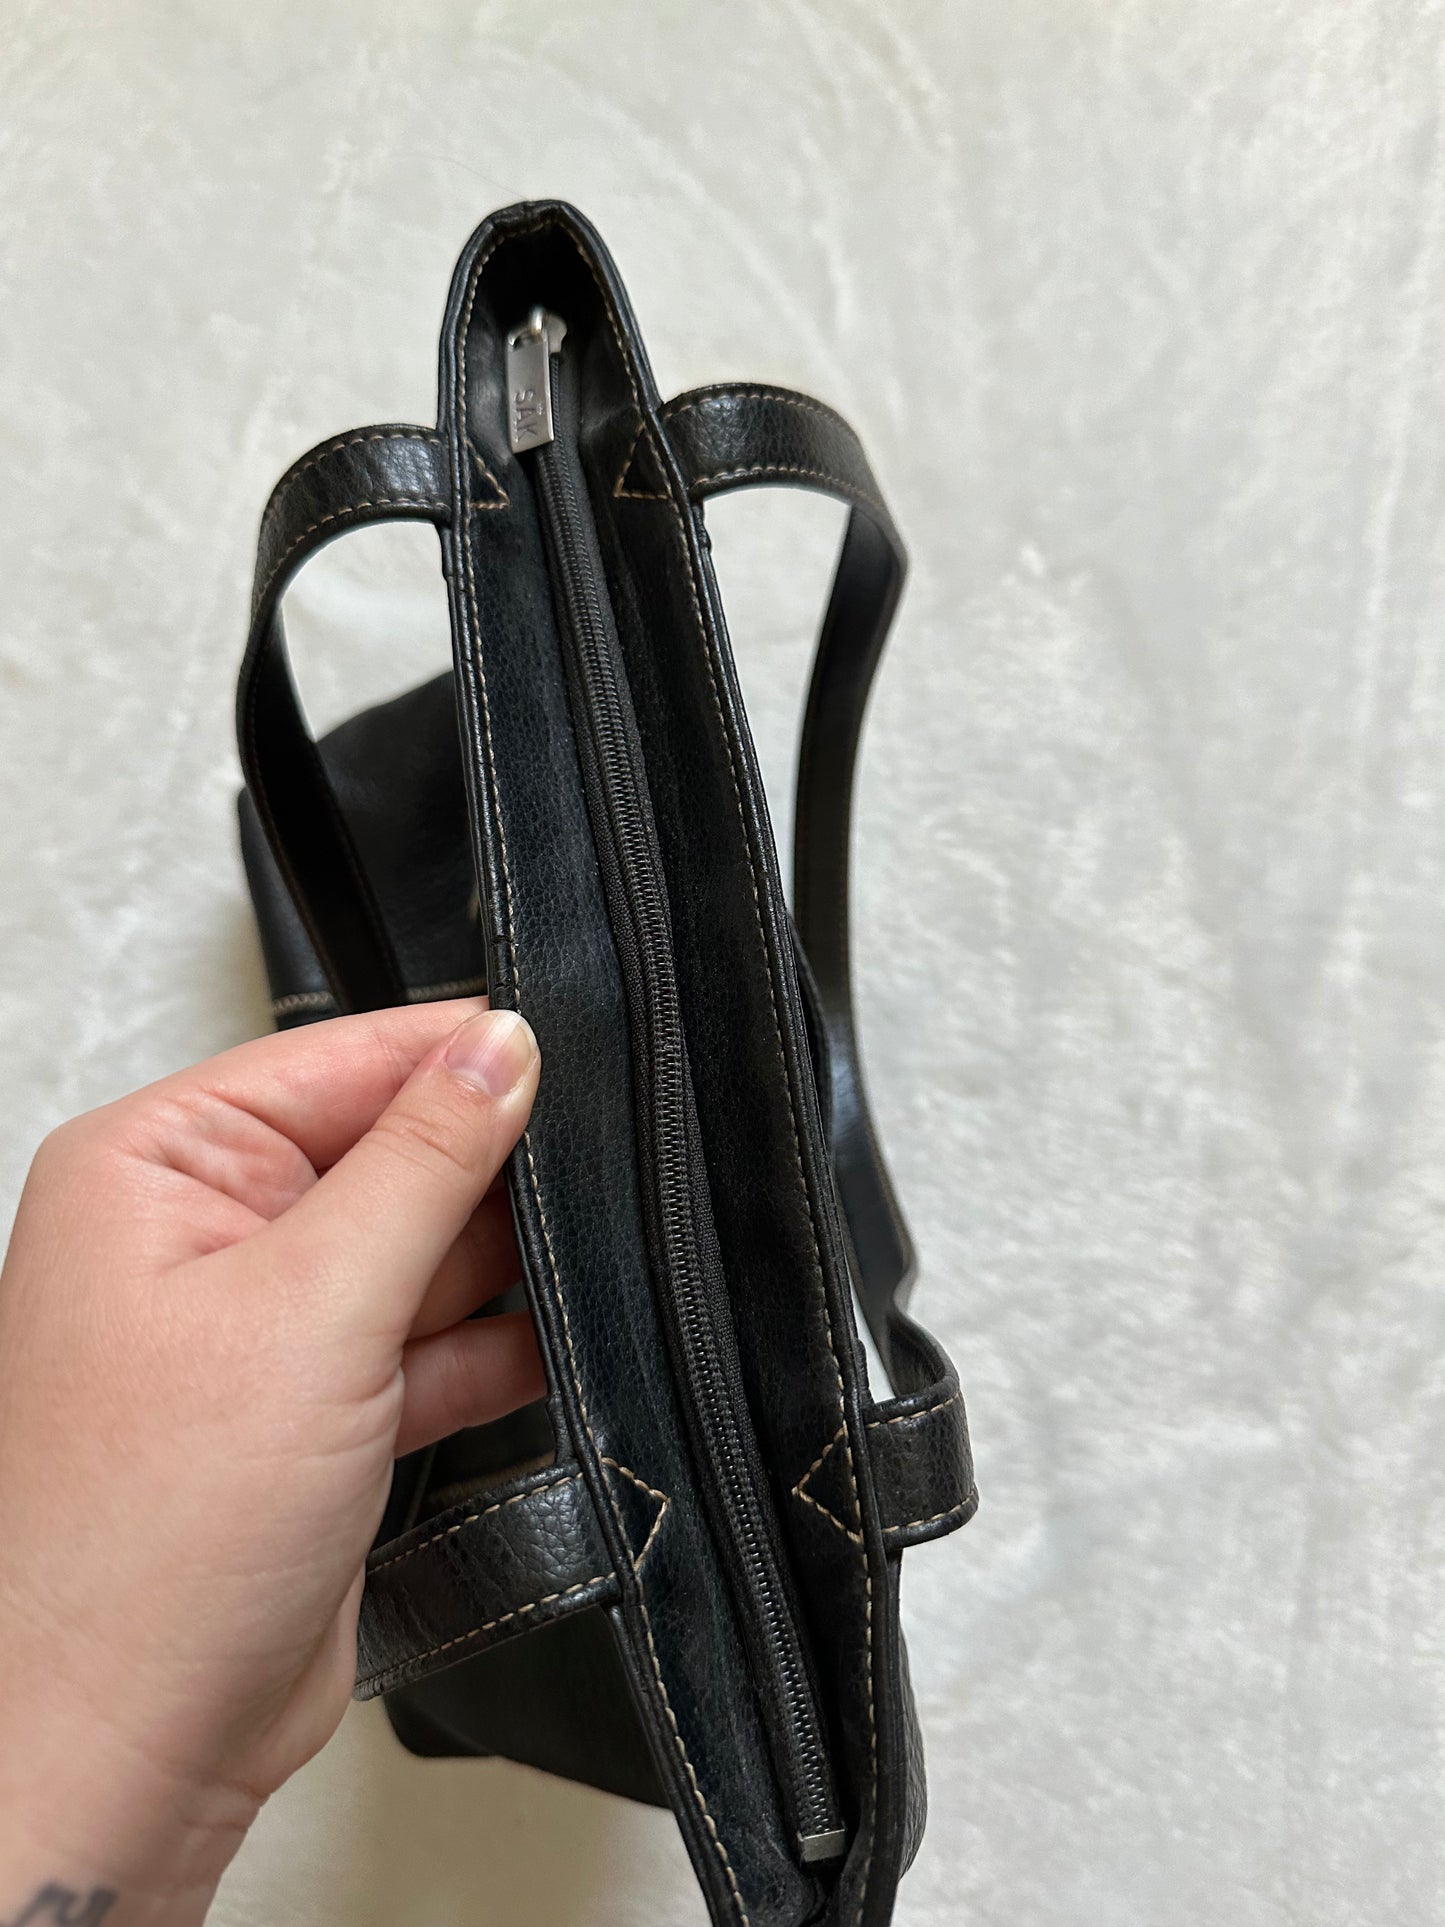 The Sak Original Black Leather Shoulder Bag